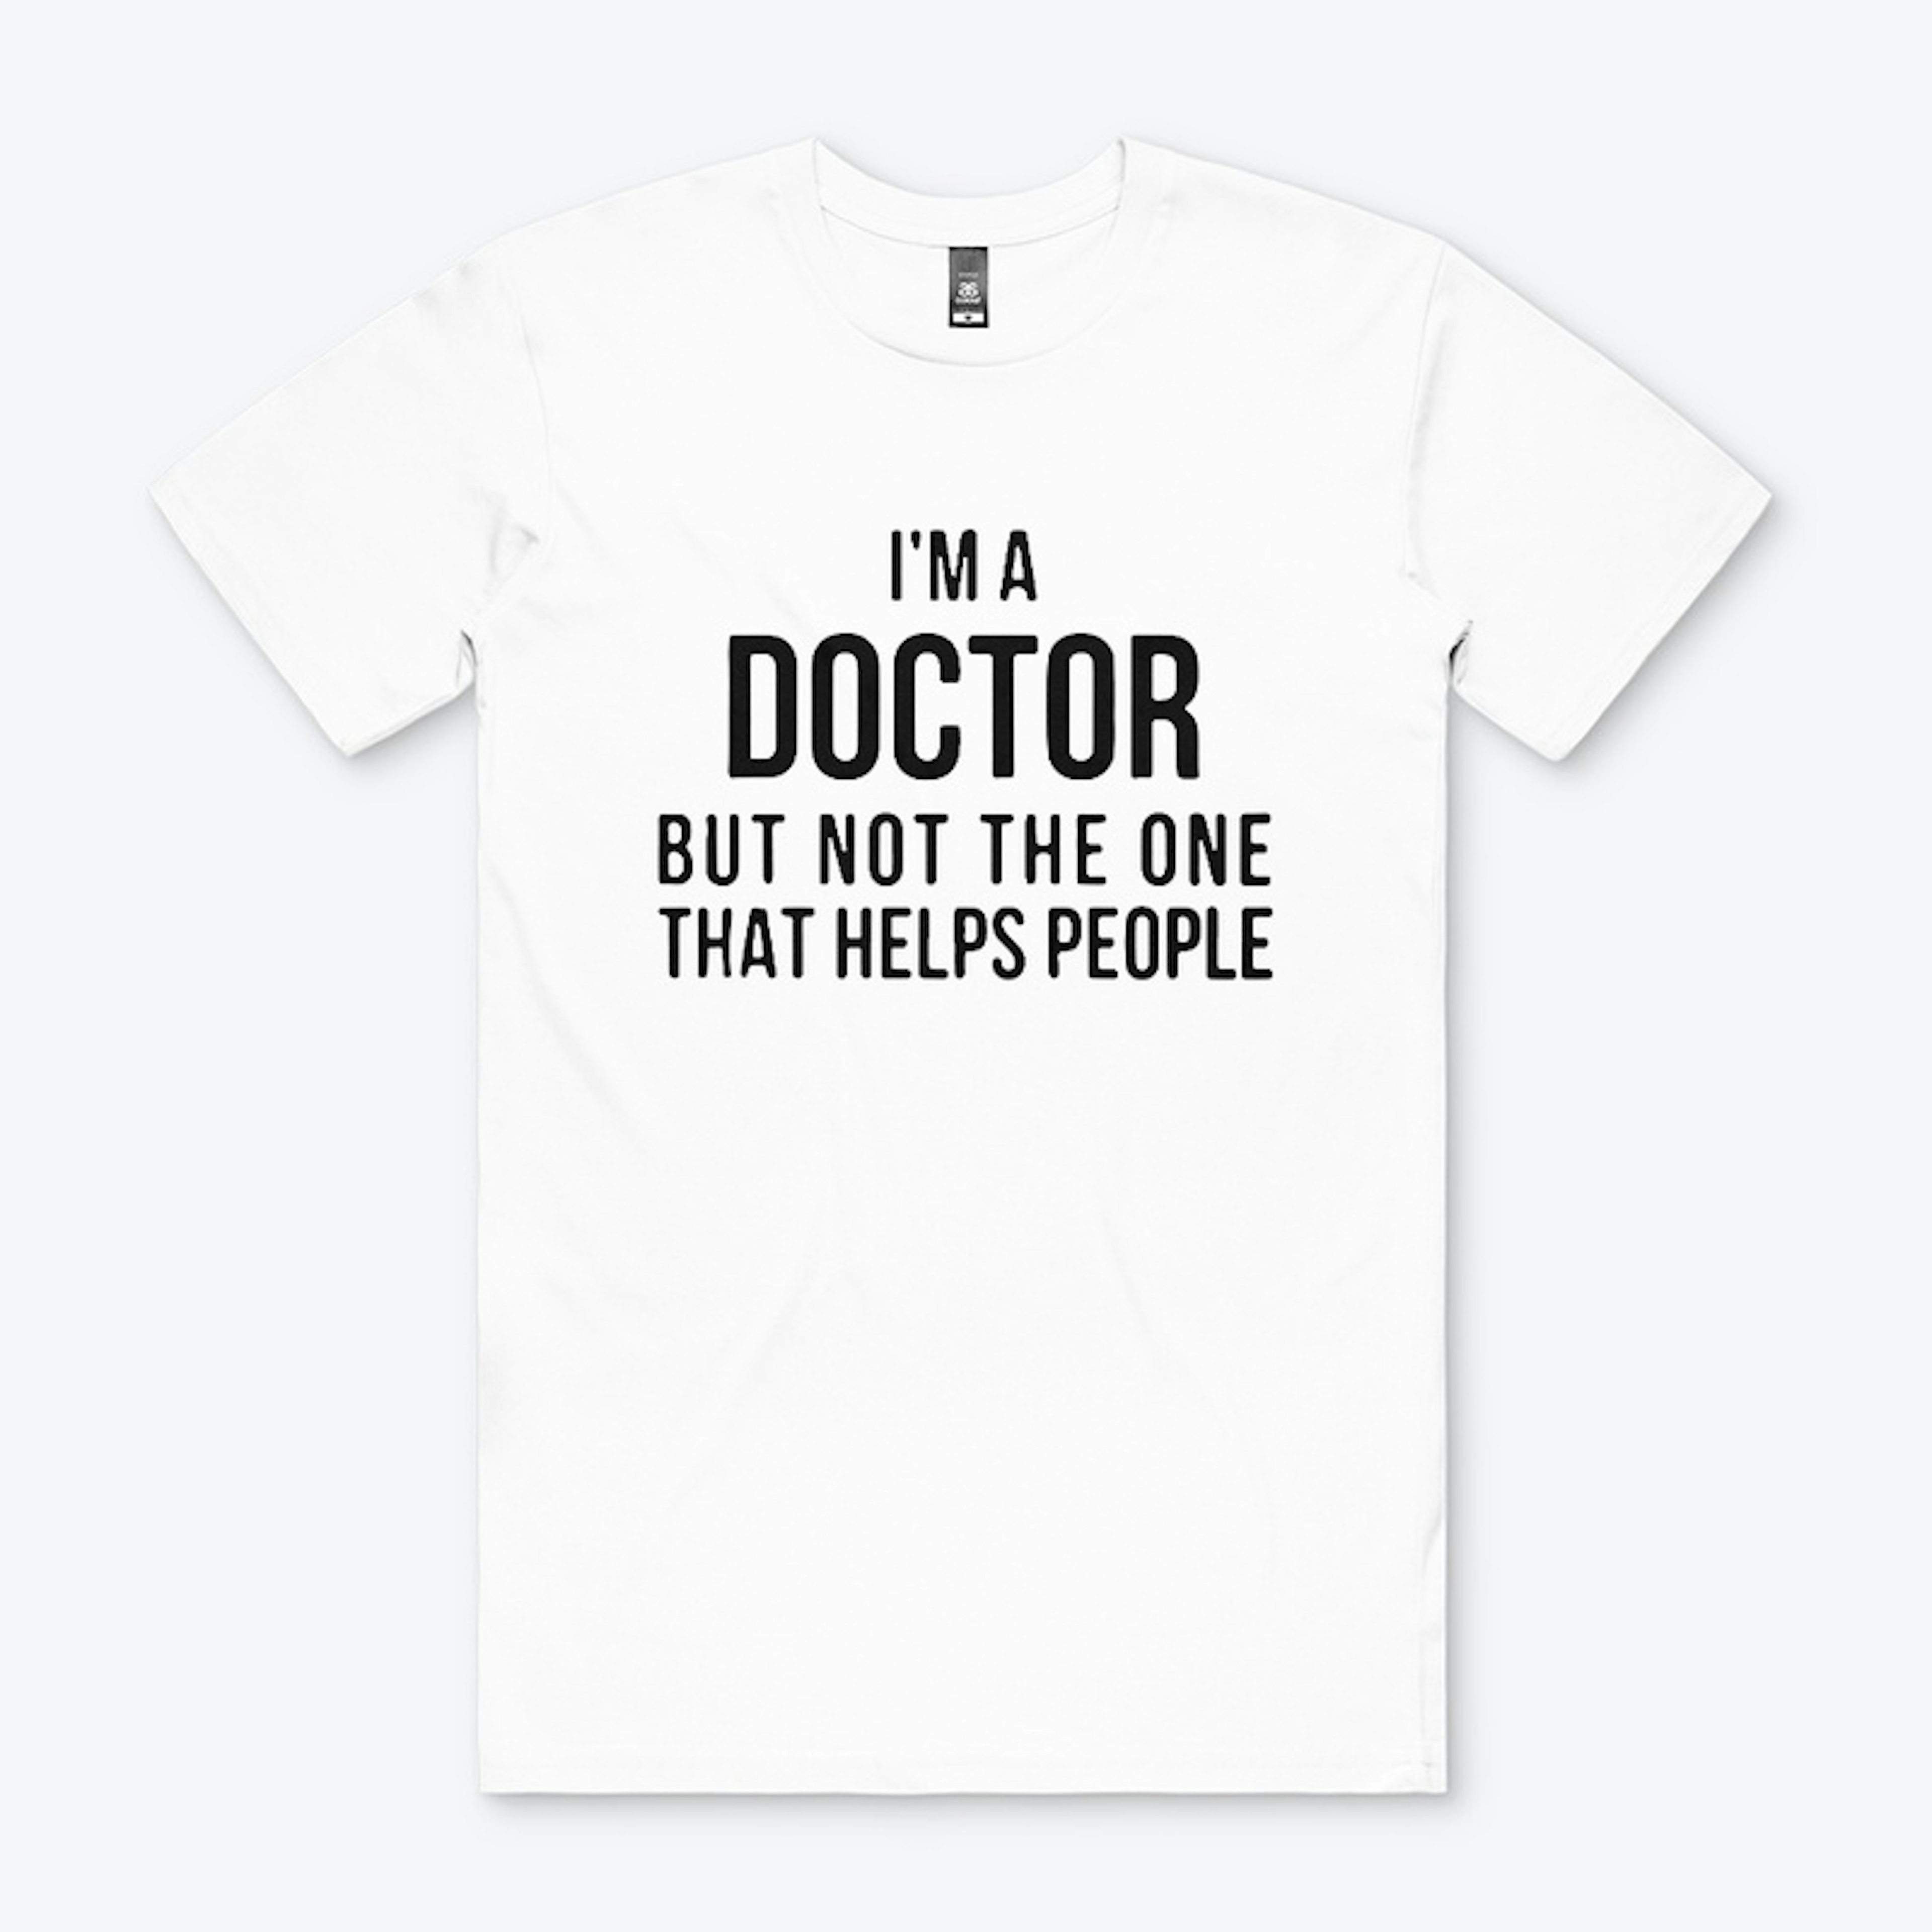 Physician T-shirt